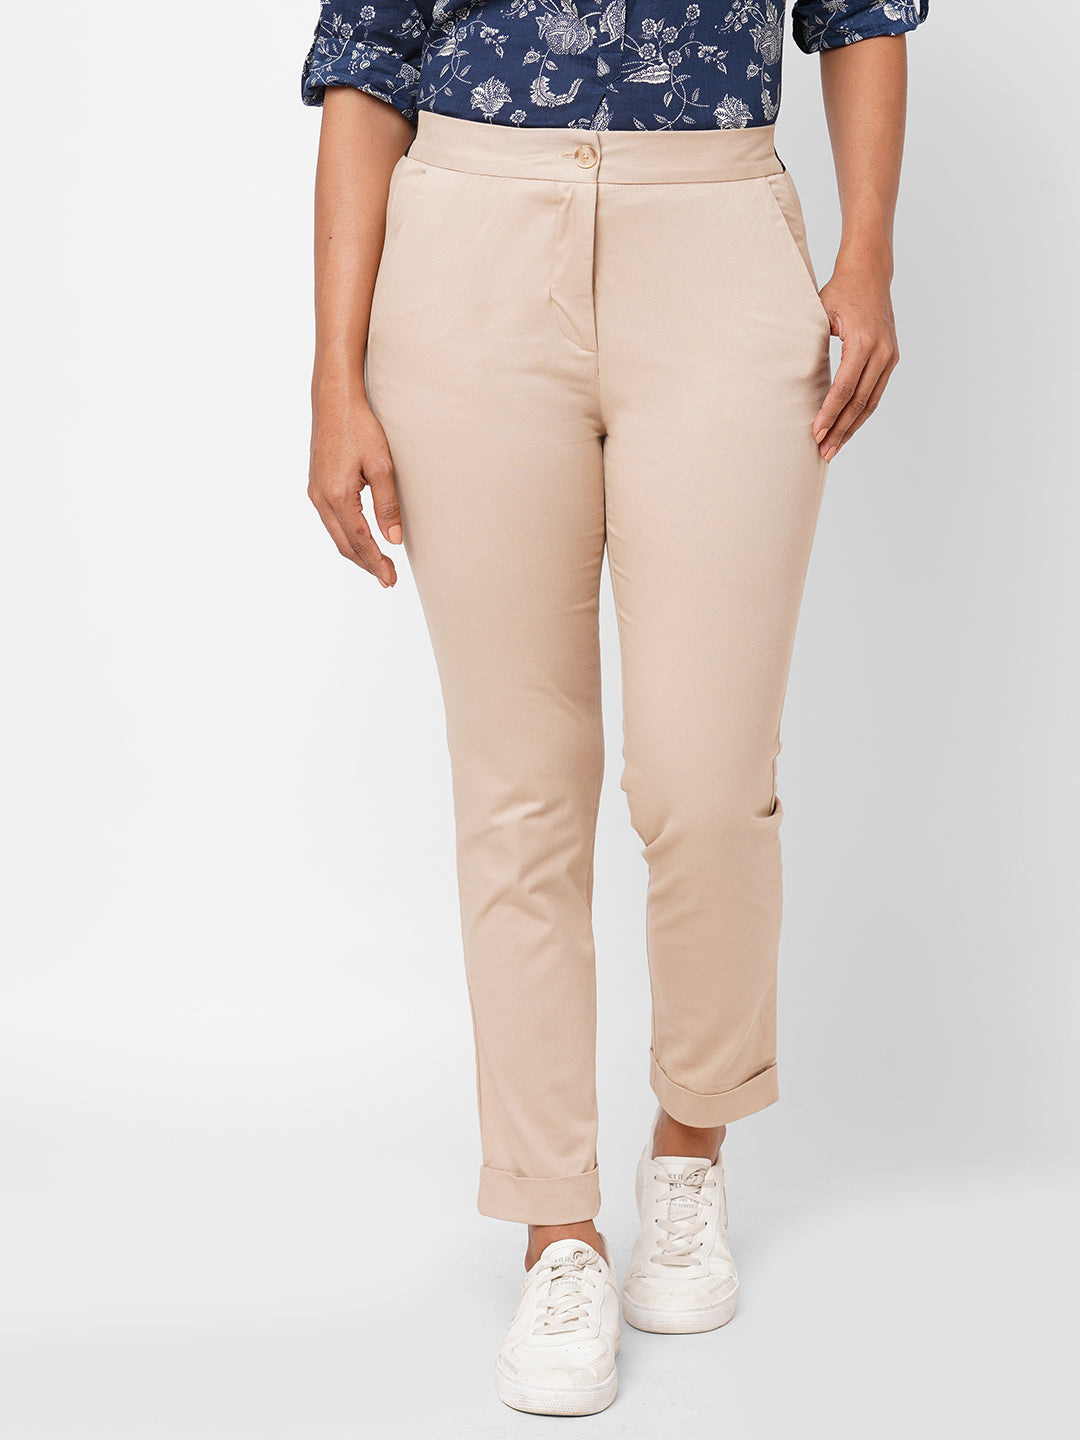 Women's Cotton Lycra Beige Slim Fit Pant